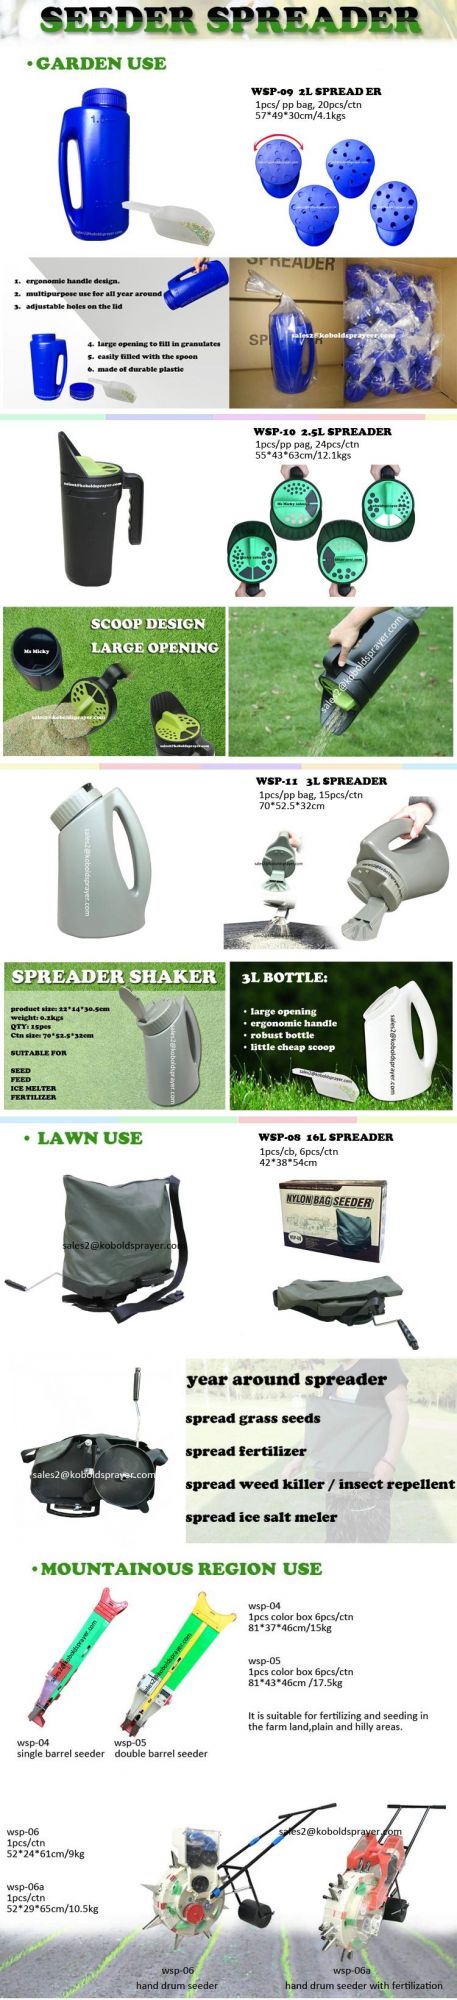 Garden Lawn Care 2.5L Hand Shaker Fertilizer Spreader Ice Melting Salt Spreader Insect Repellent Seeder